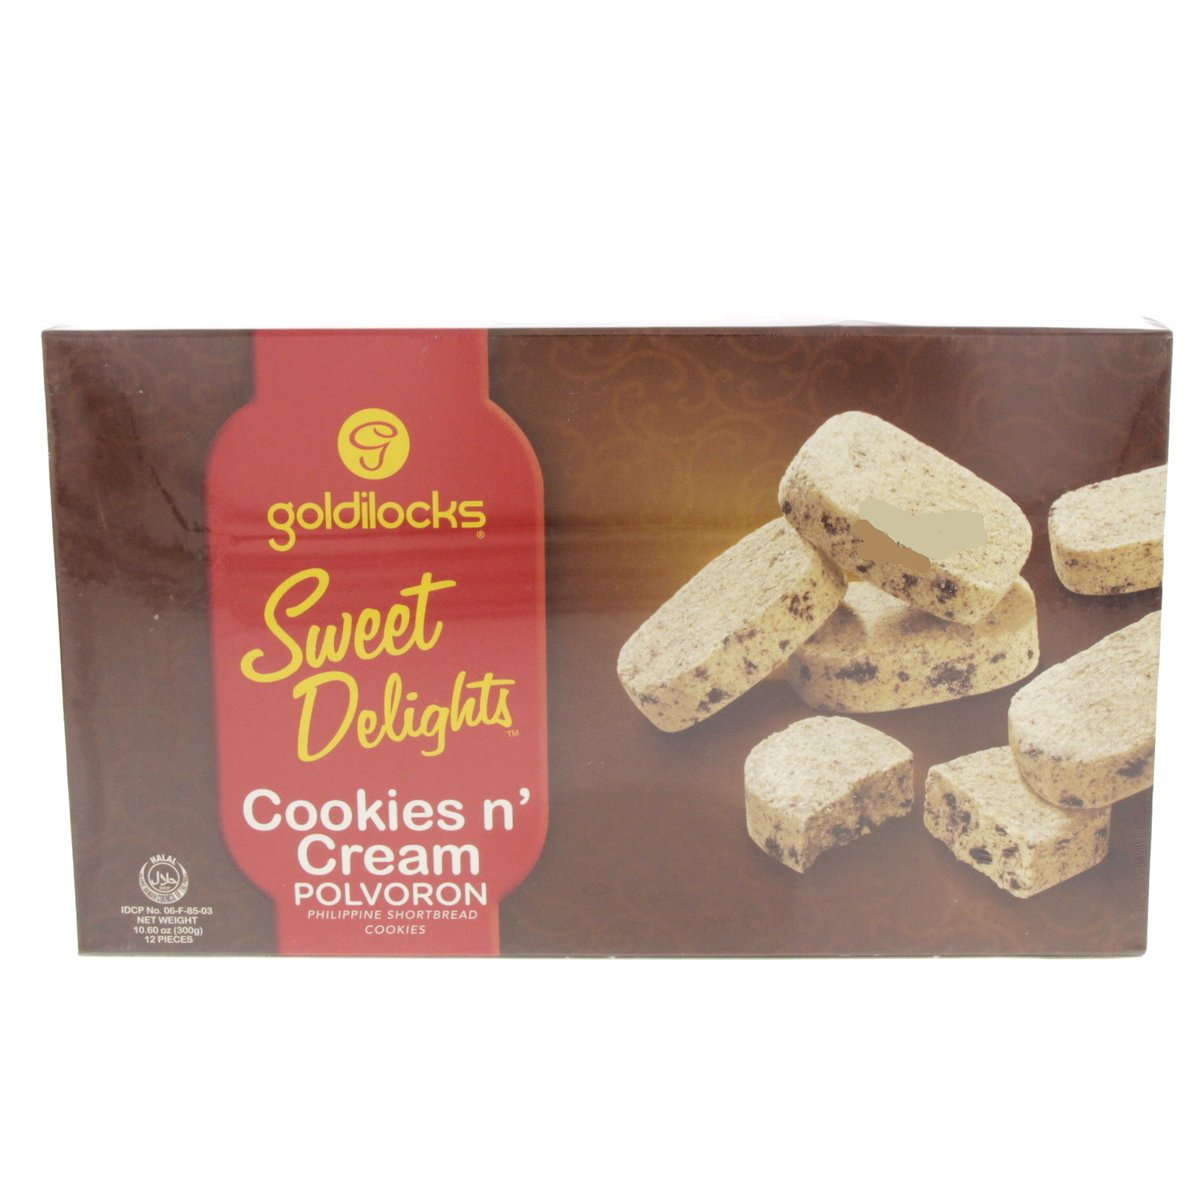 Goldilocks Sweet Delights Cookies n' Cream Polvoron 300g